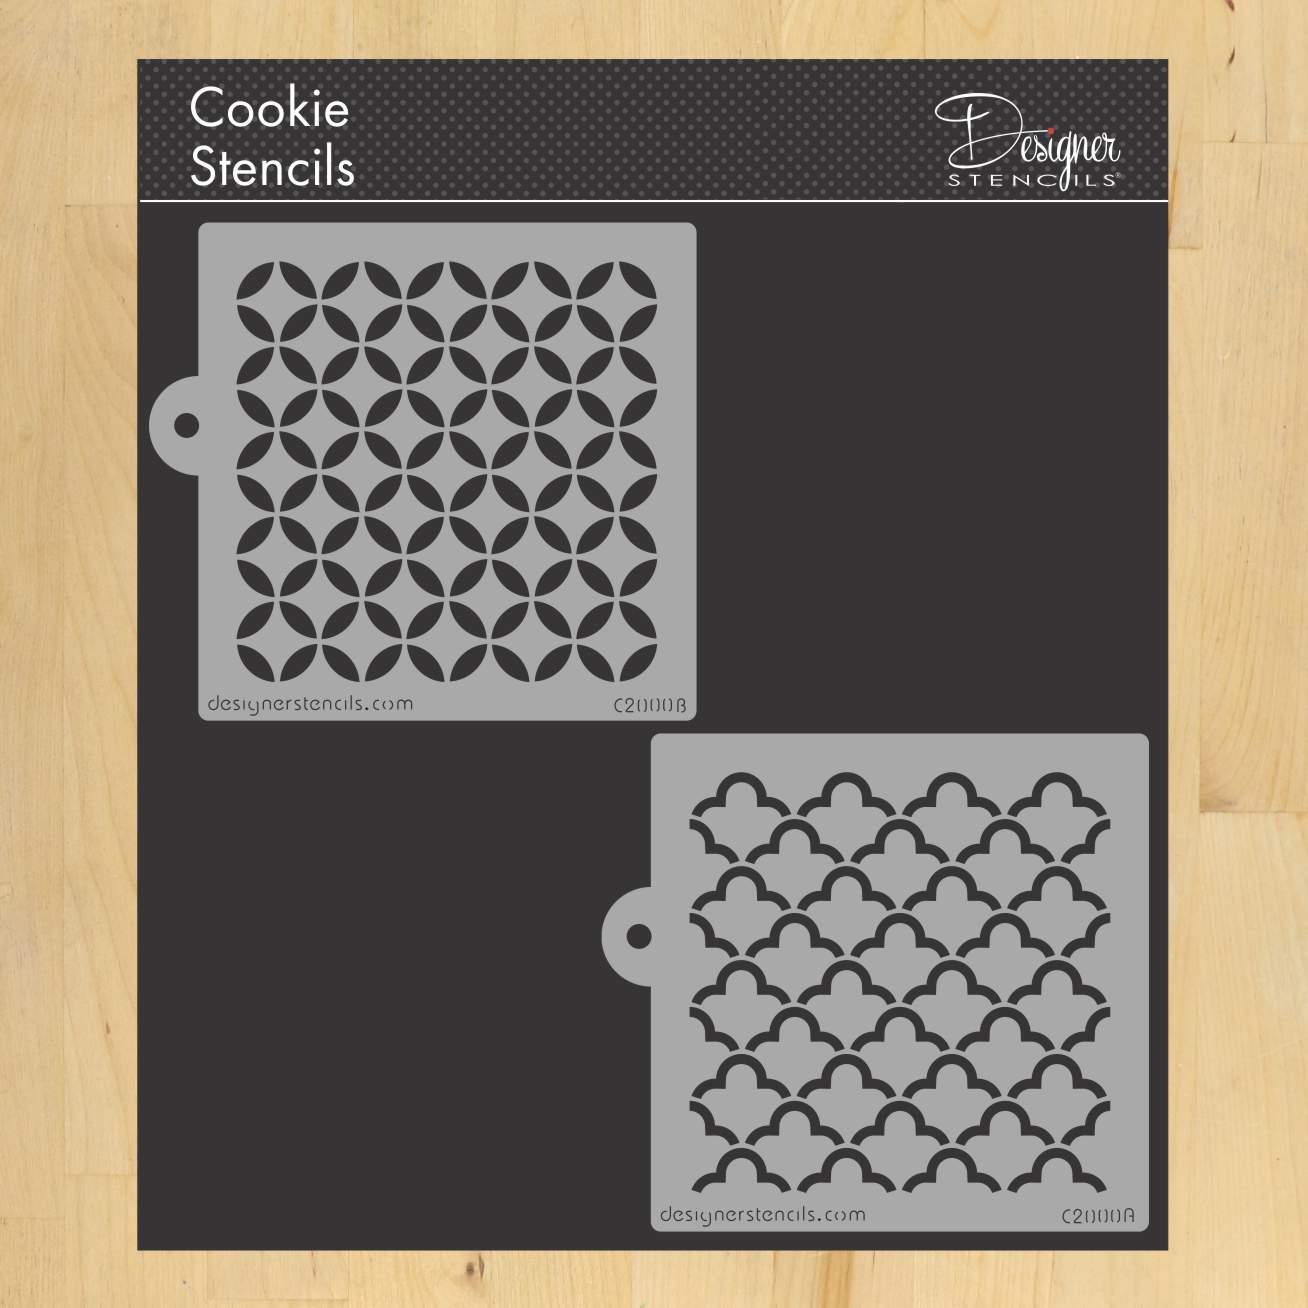 Quilting Miniprint Cookie Stencil Set by Designer Stencils